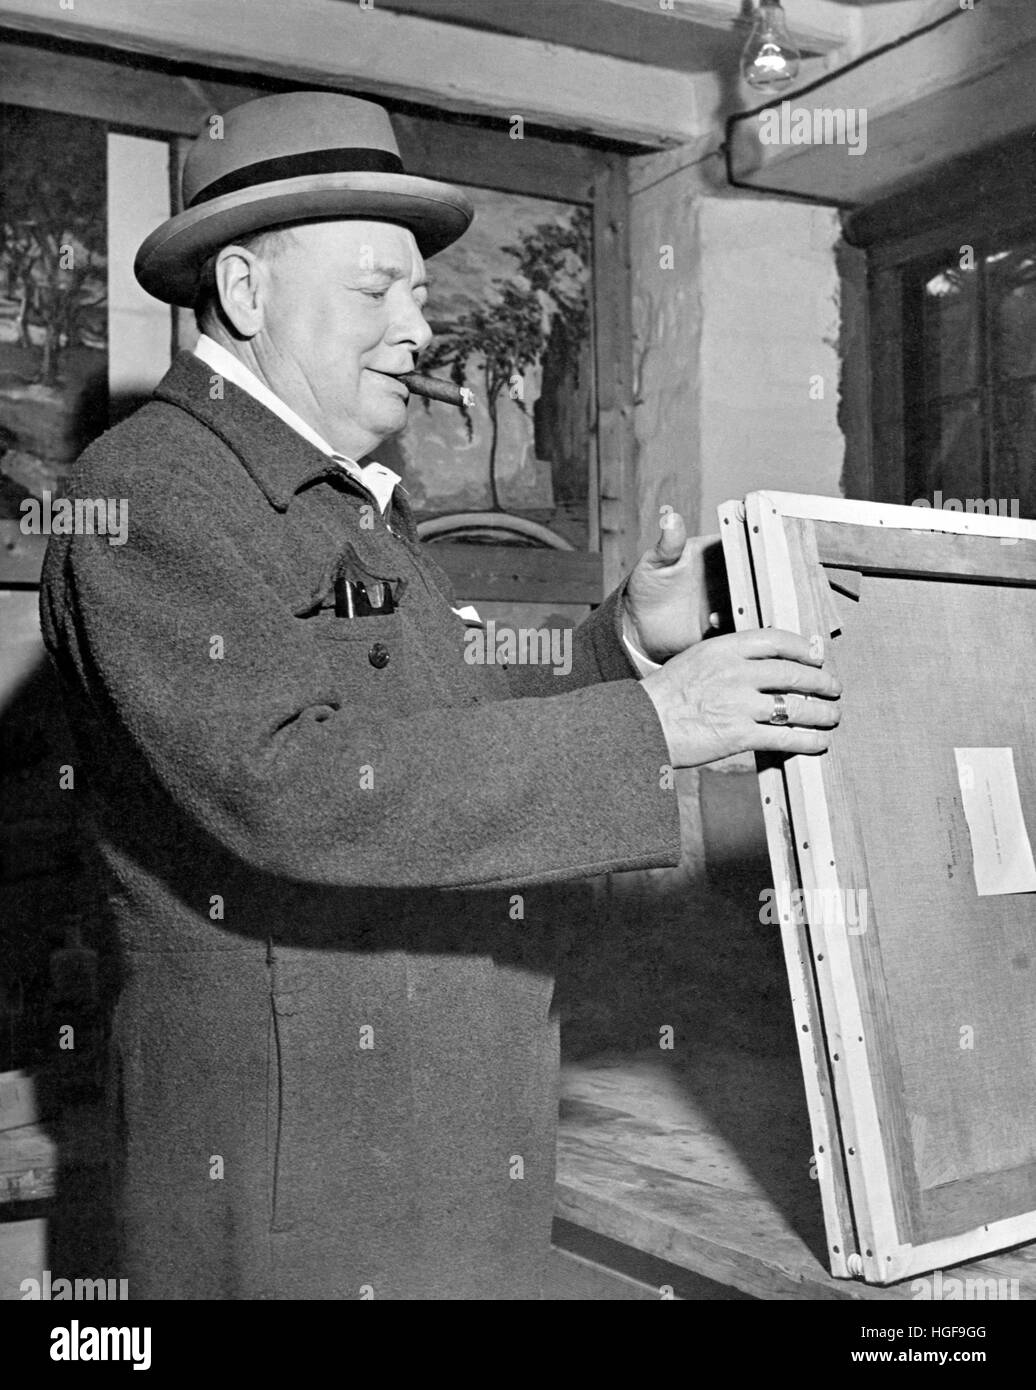 Winston Churchill travaillant sur une peinture avec des pinceaux, un chevalet et de l'équipement de peinture. Chartell1946 Banque D'Images